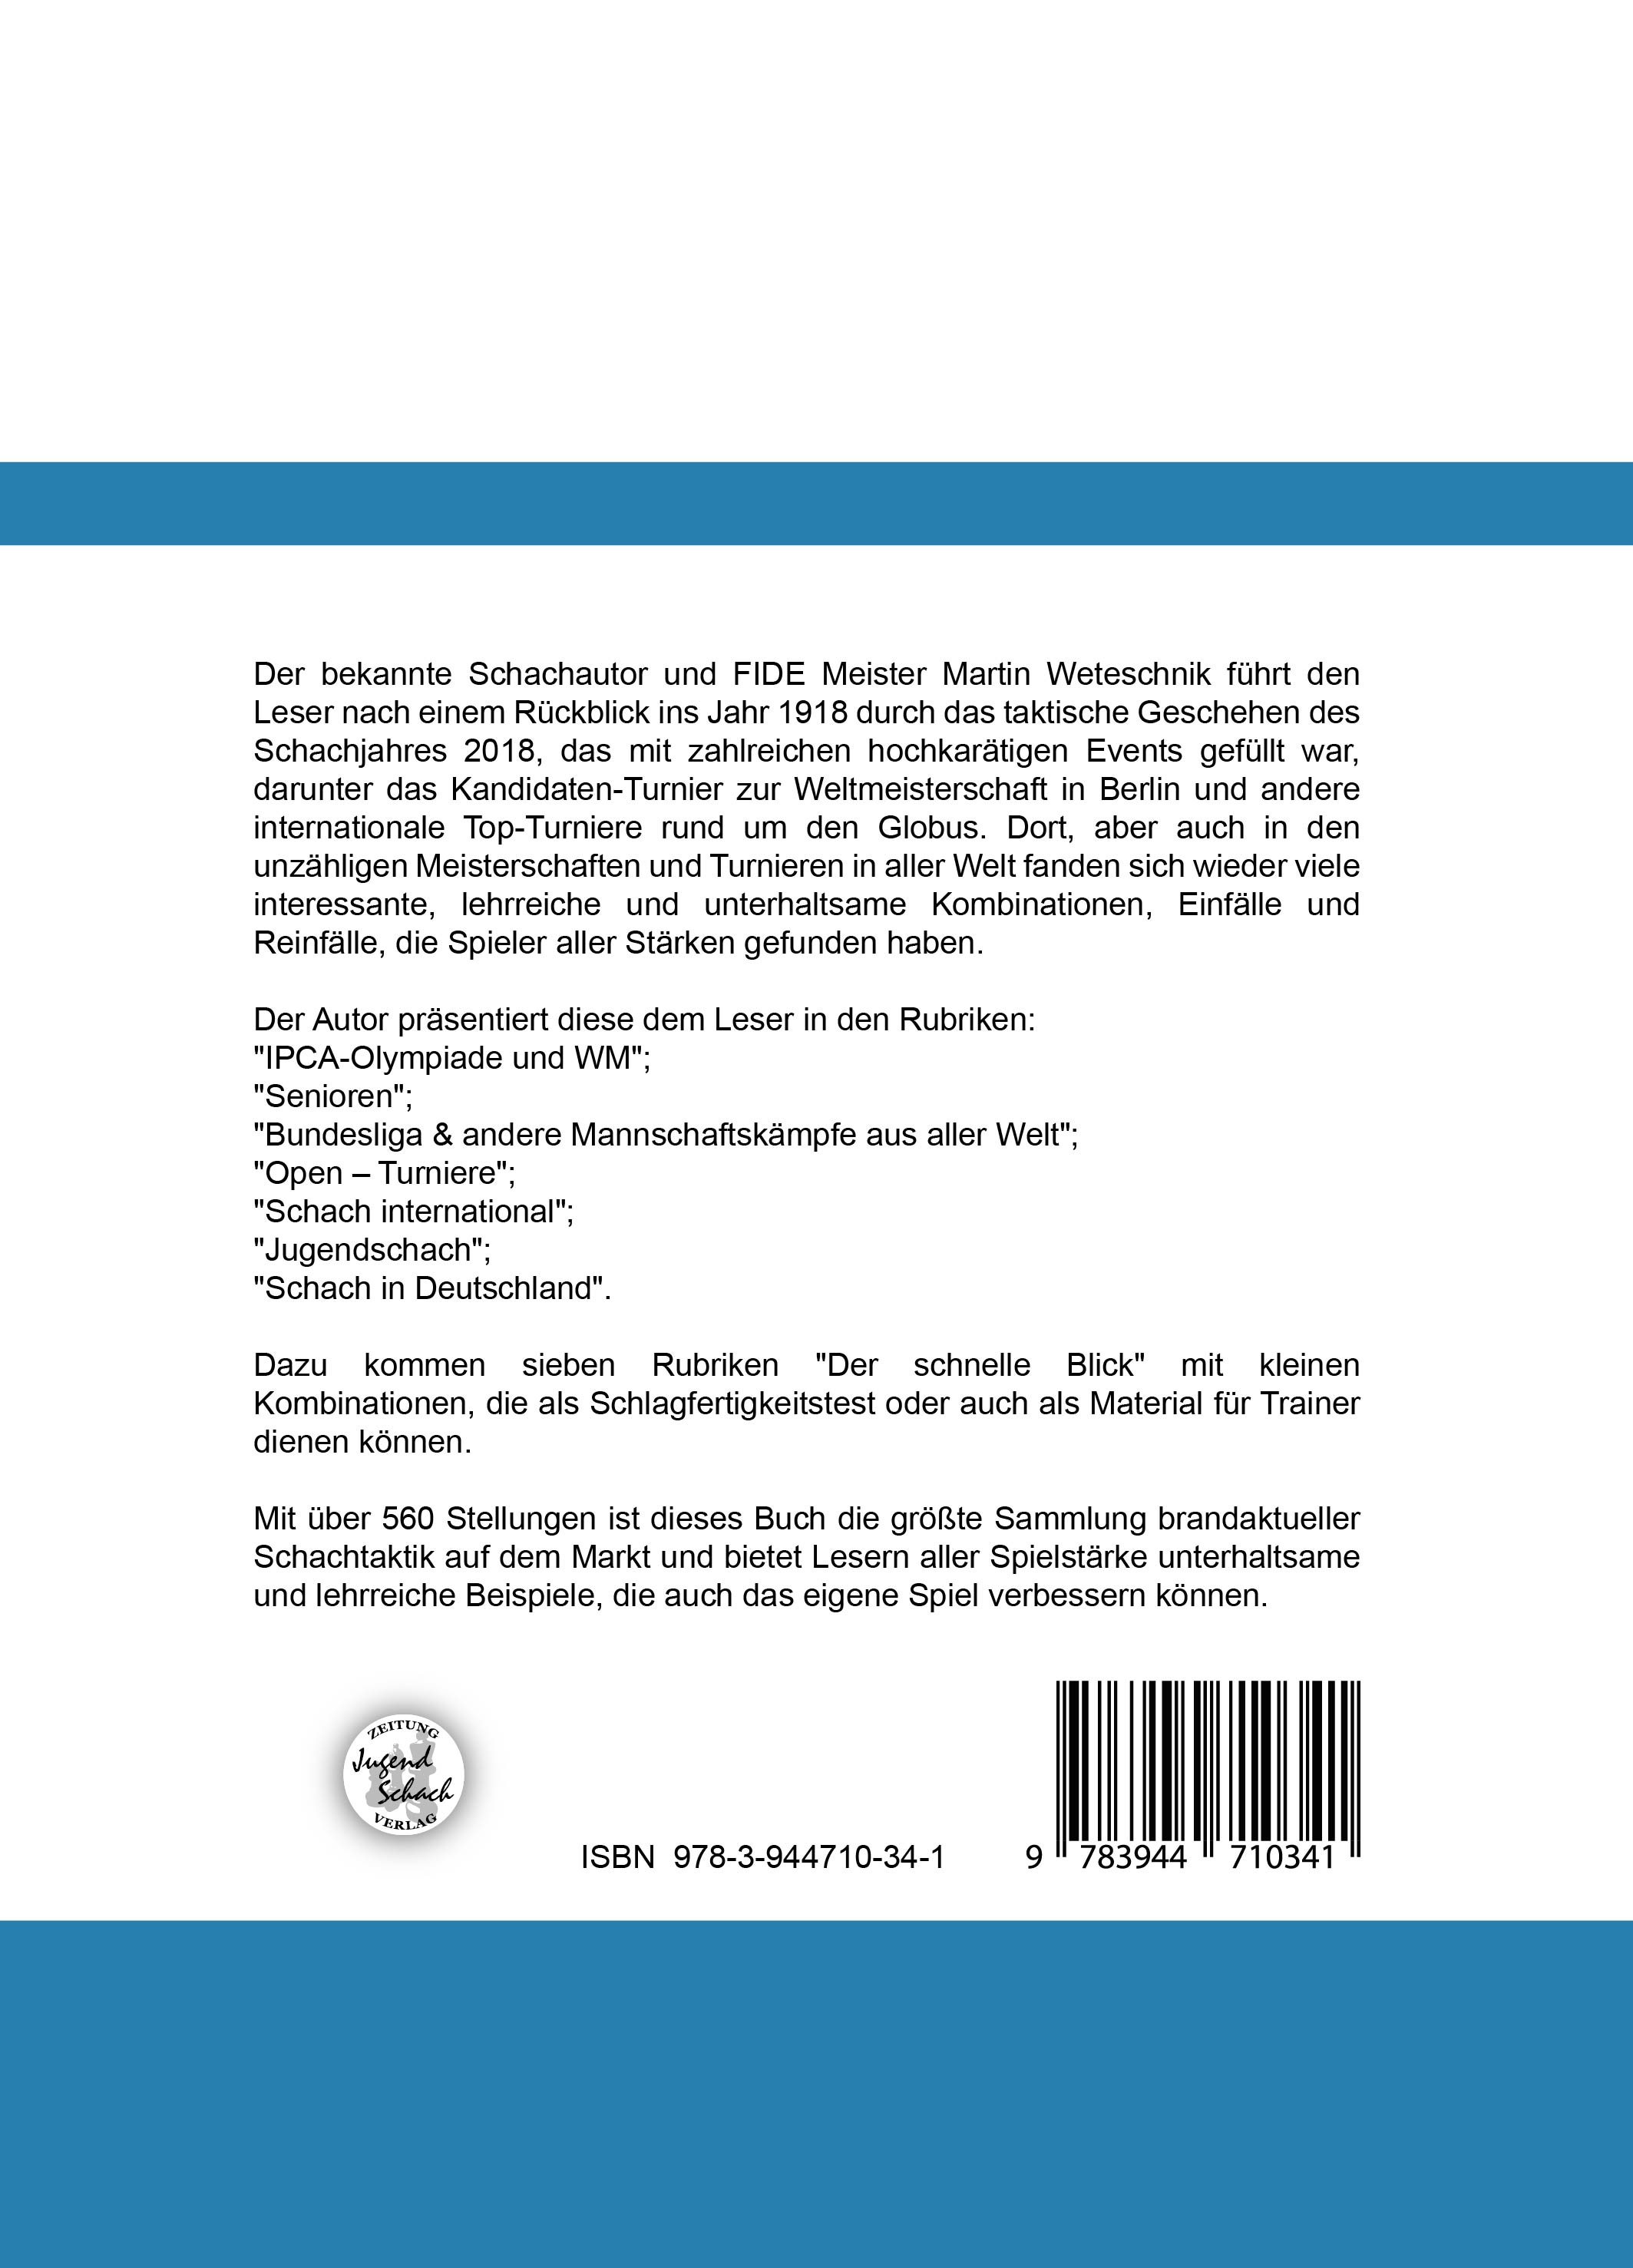 Schachtaktik - Jahrbuch 2019